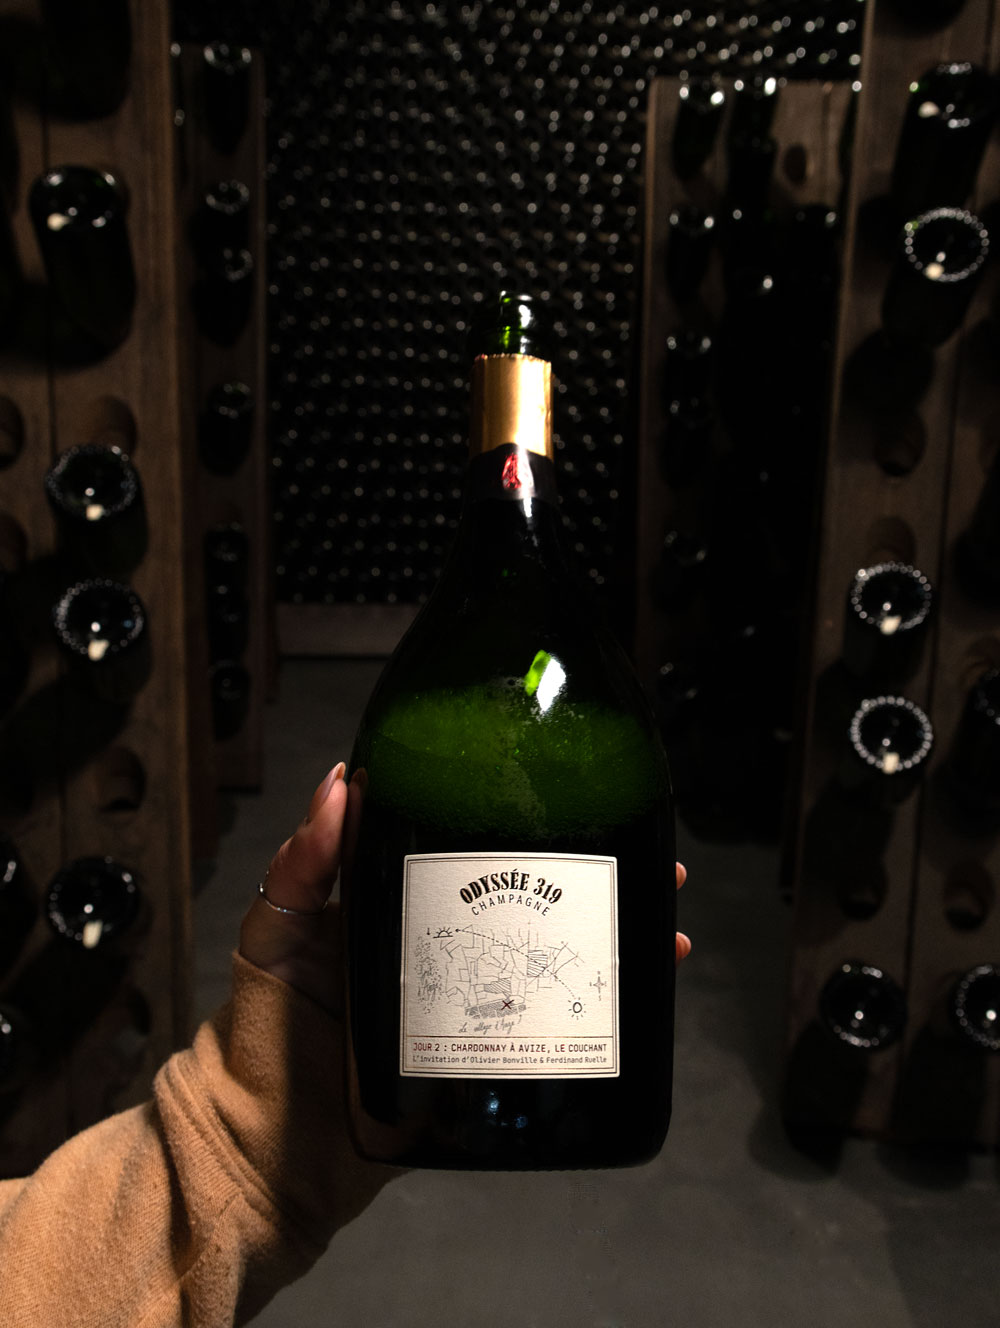 Champagne Odyssée 319 Blanc de Blancs Jour 2: Le Couchant Grand Cru Brut 2015